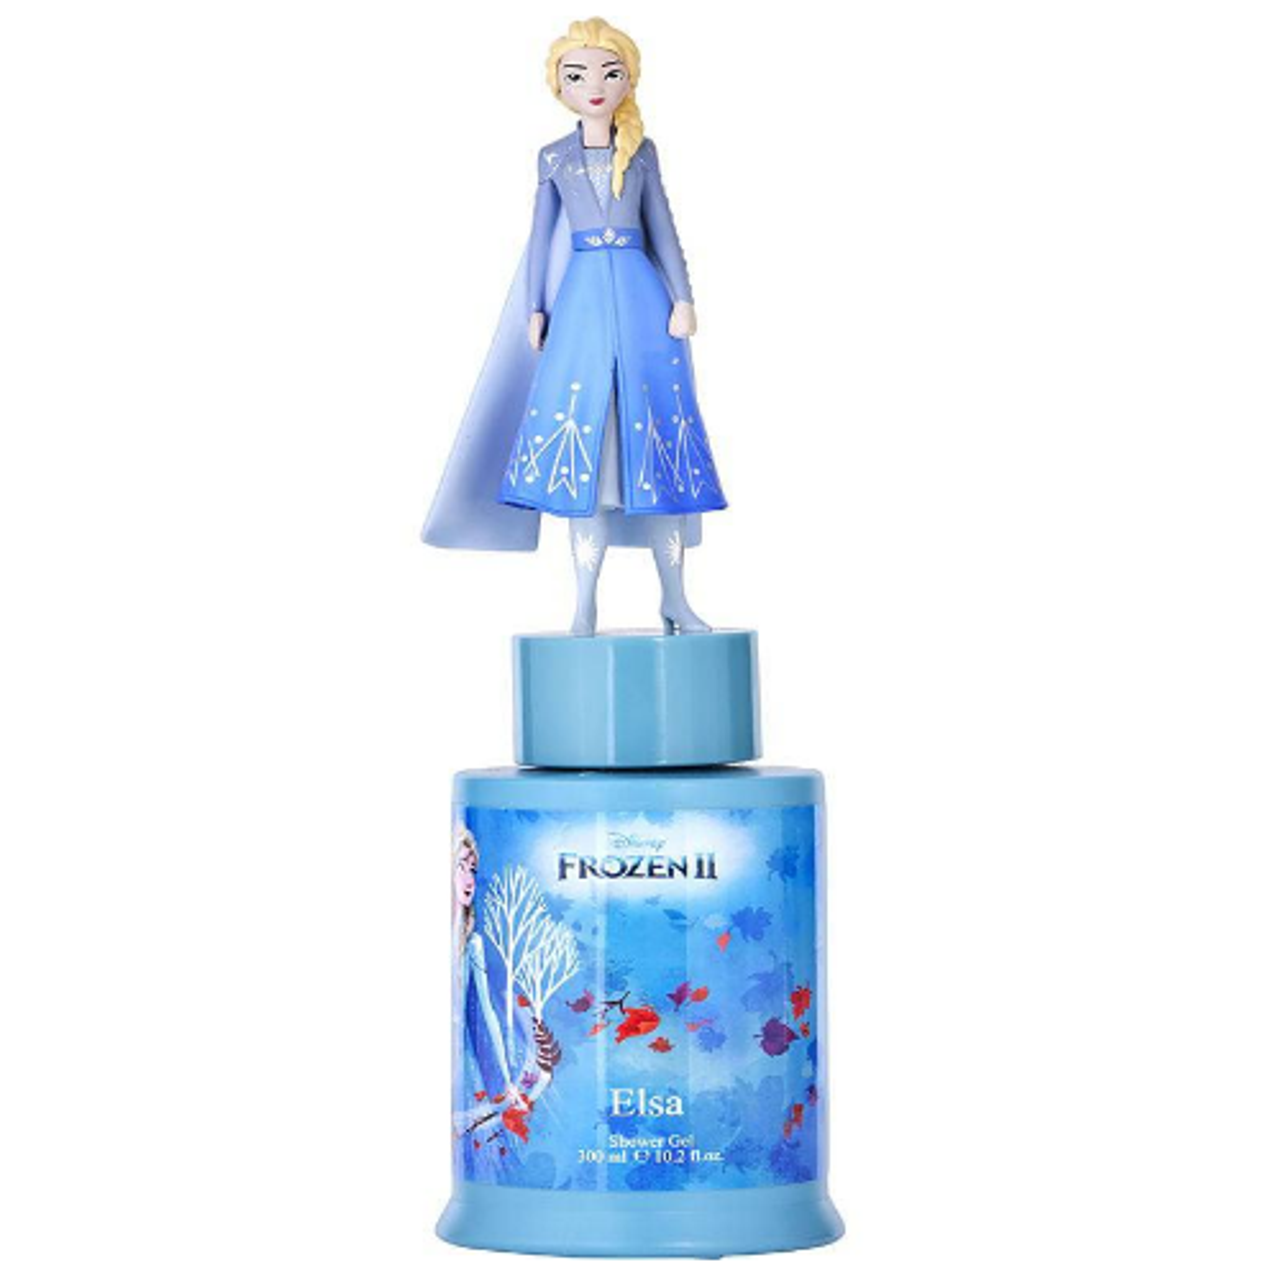 Disney Frozen Set: 3.4 oz Eau de Toilette and Bubble Bath